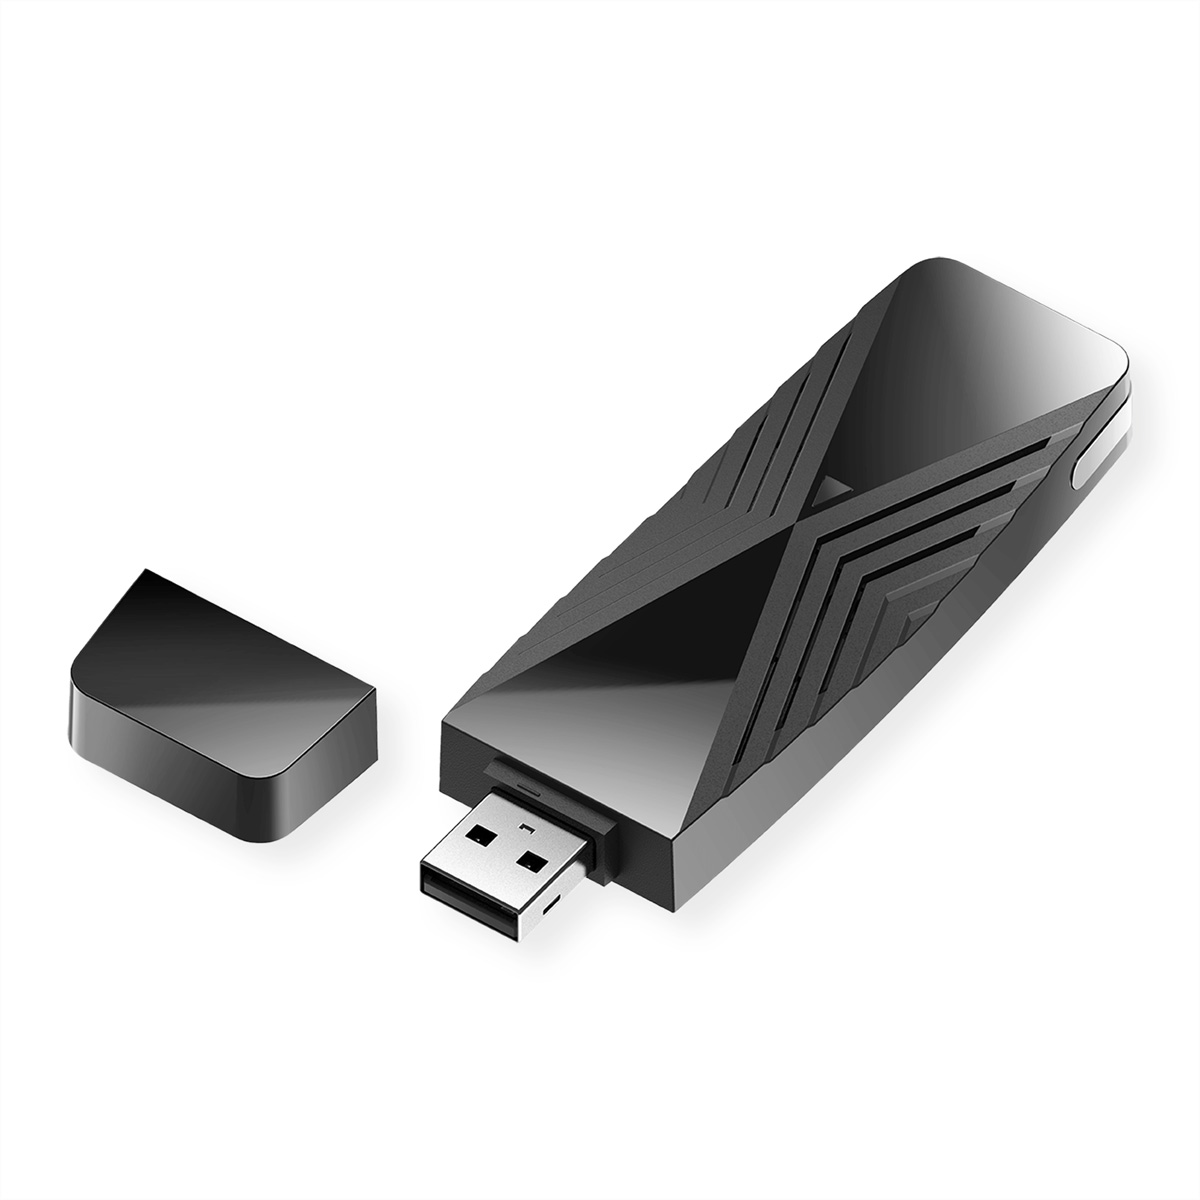 D-LINK DWA-X1850 AX1800 Wi-Fi WLAN Stick 6 USB USB Adapter